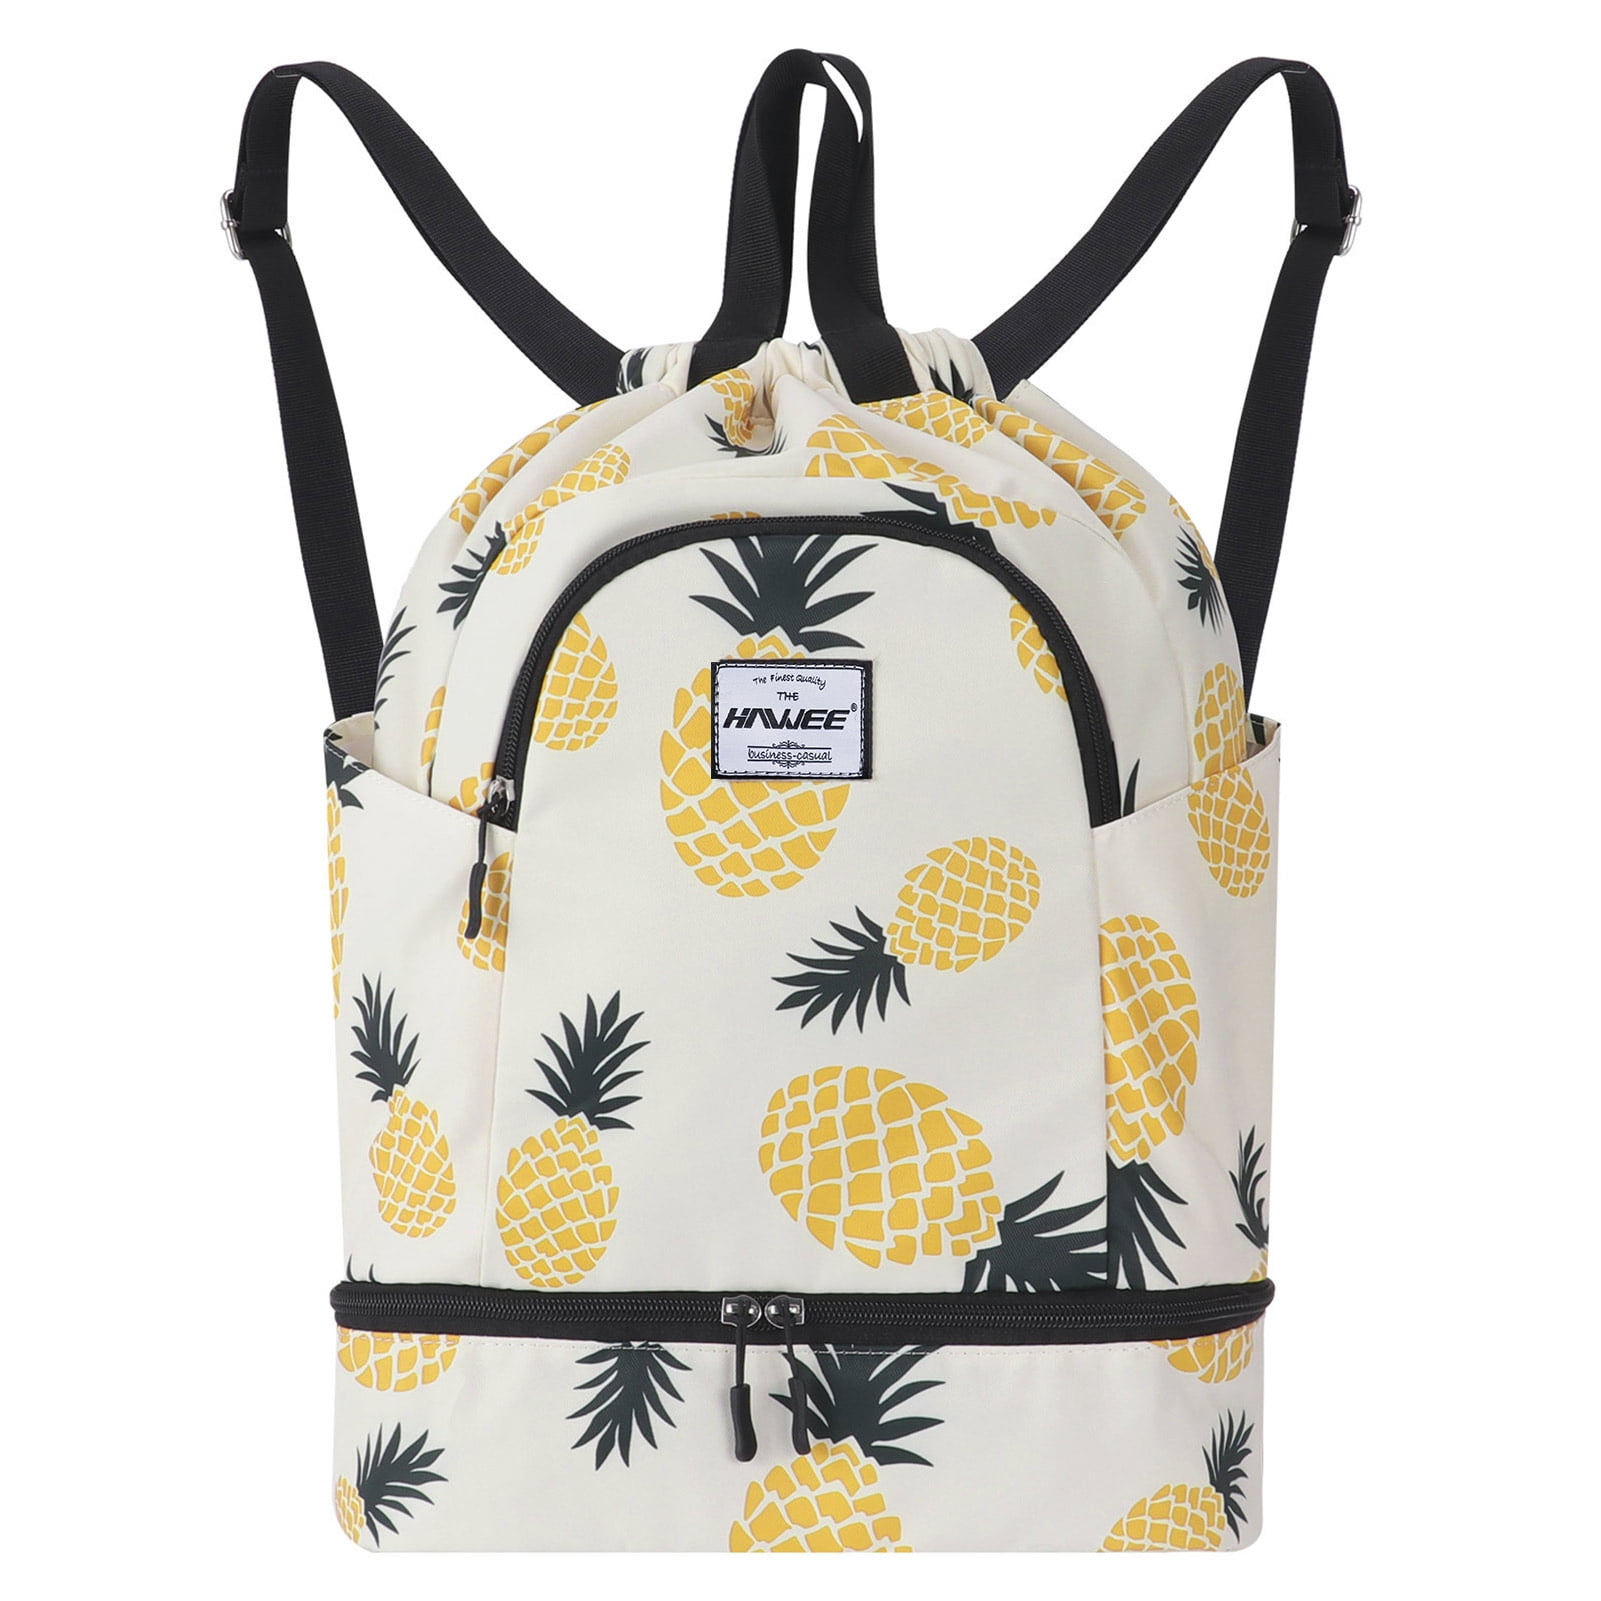 Dry Wet Drawstring Bag Waterproof String Backpack Swim Pool Beach Travel Gym Bag 